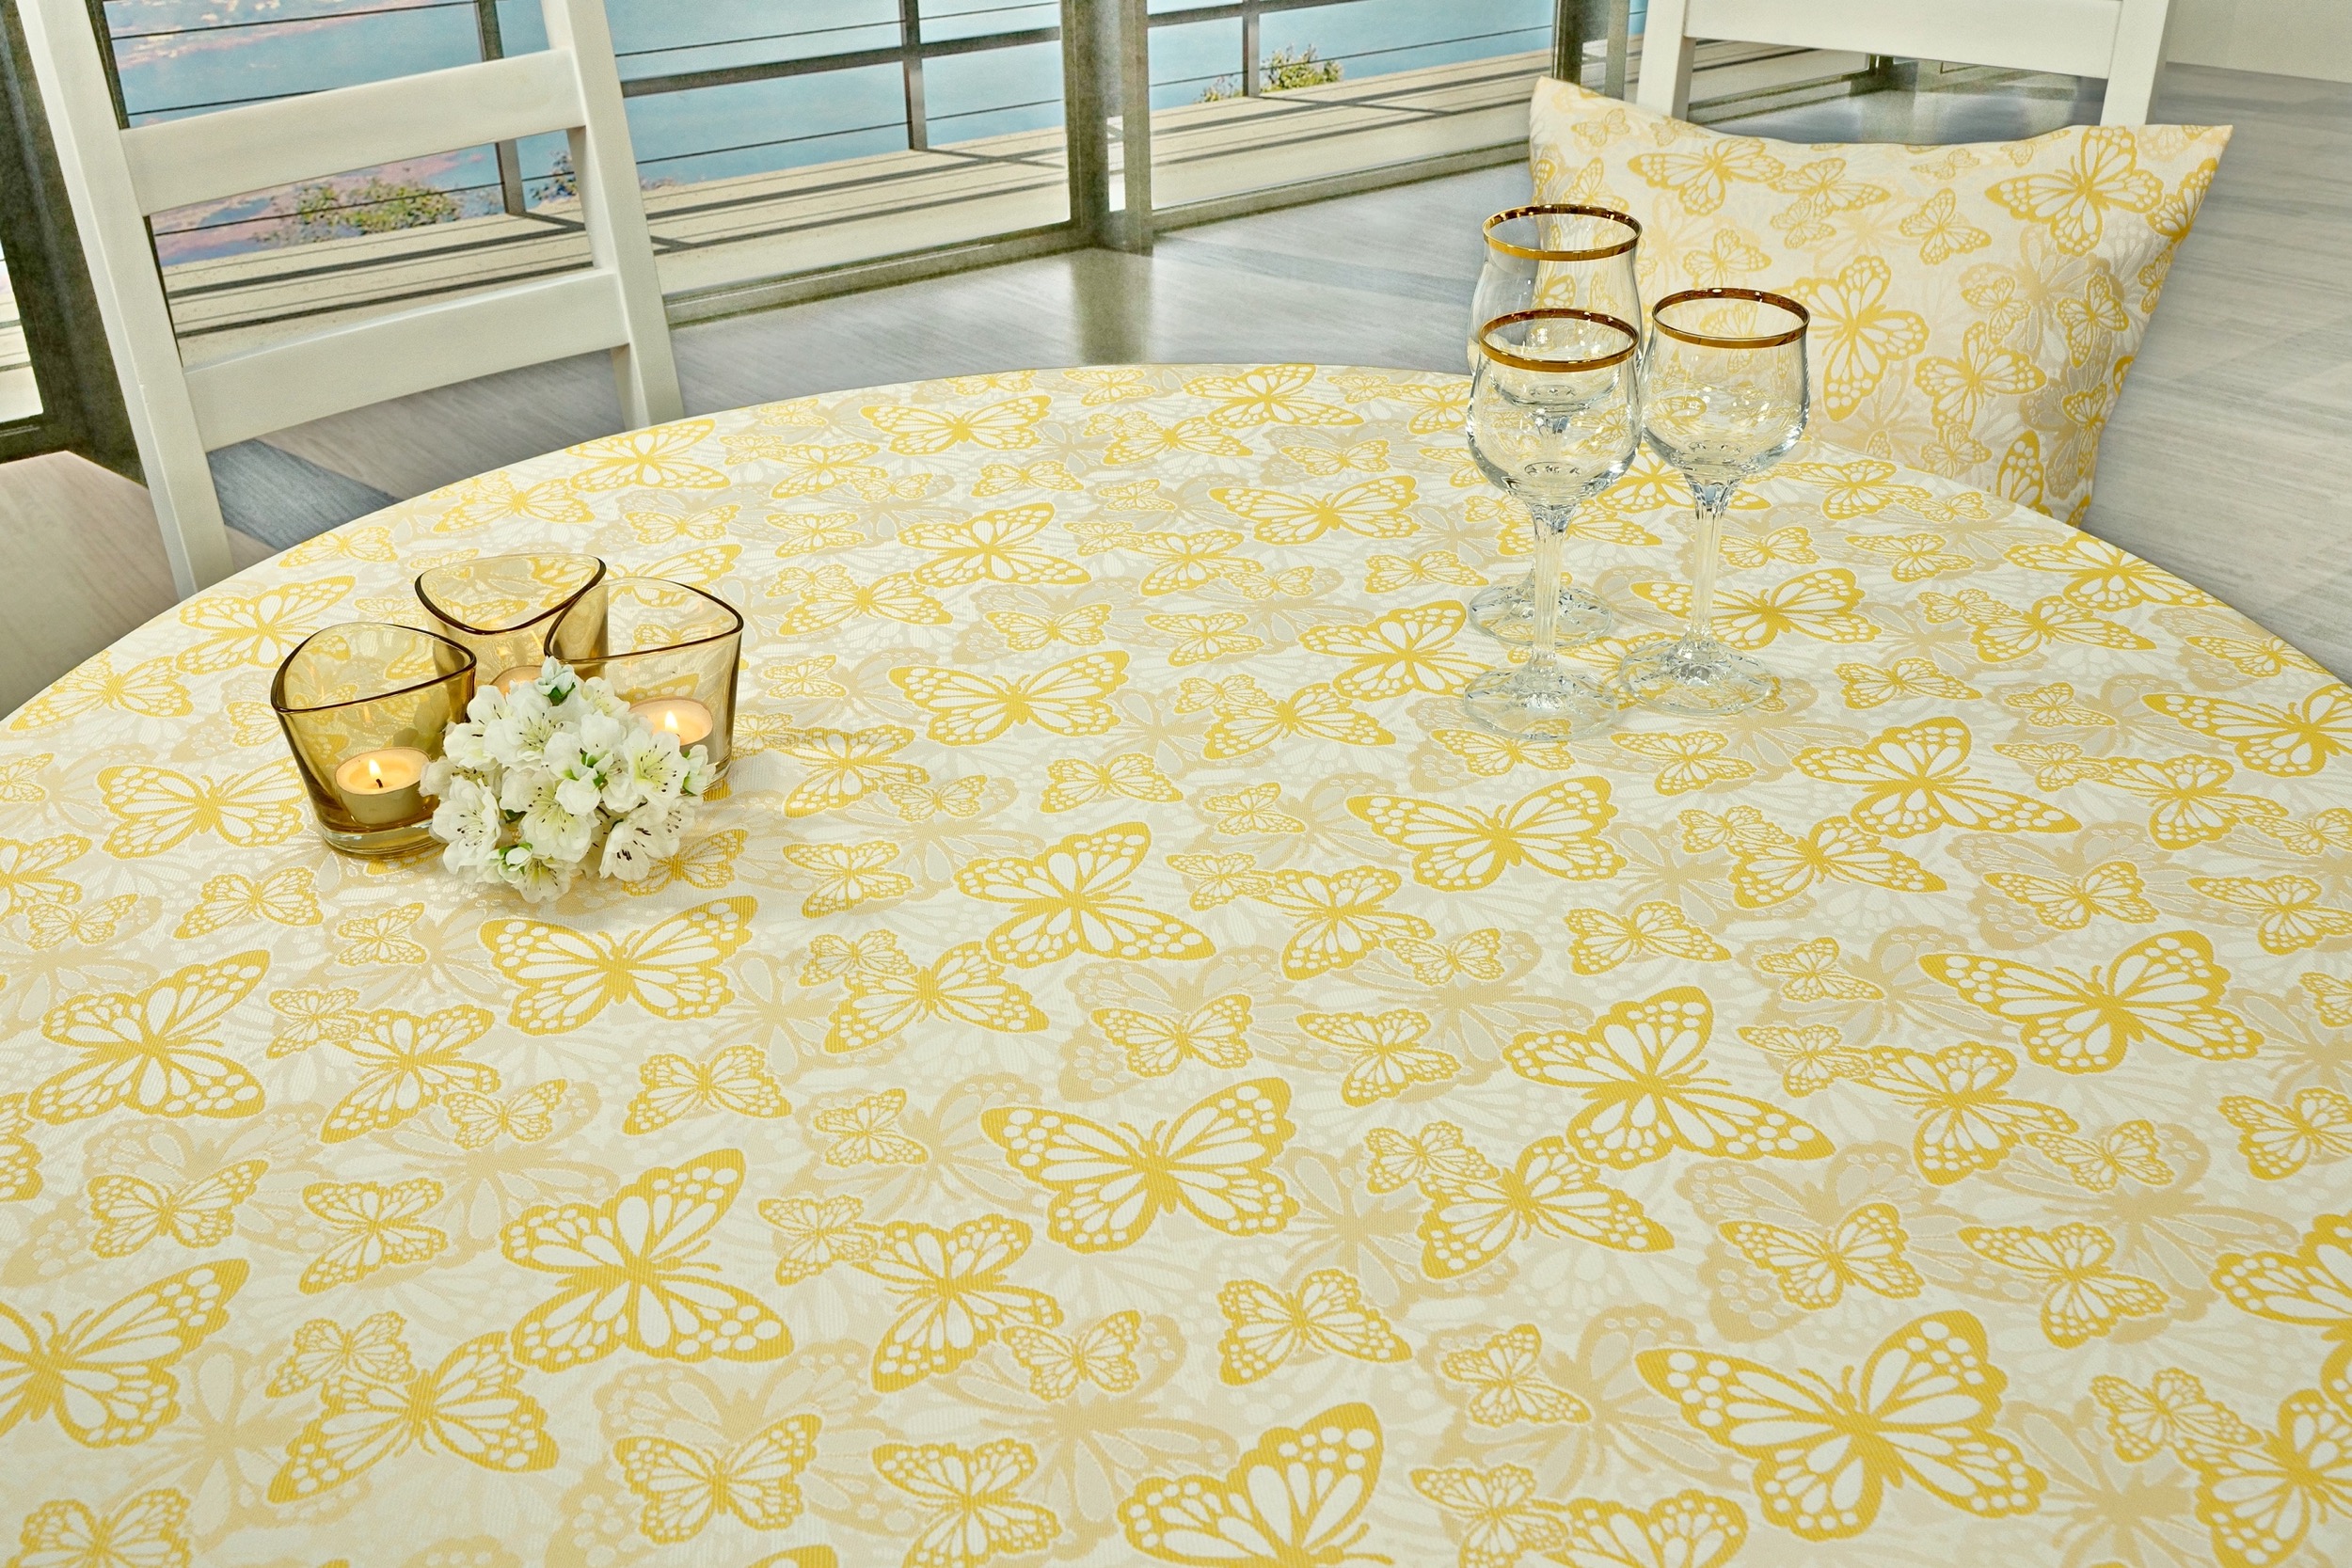 Fleckgeschützte Tischdecke Weiß Gelb Muster Springtime Breite 100 cm OVAL